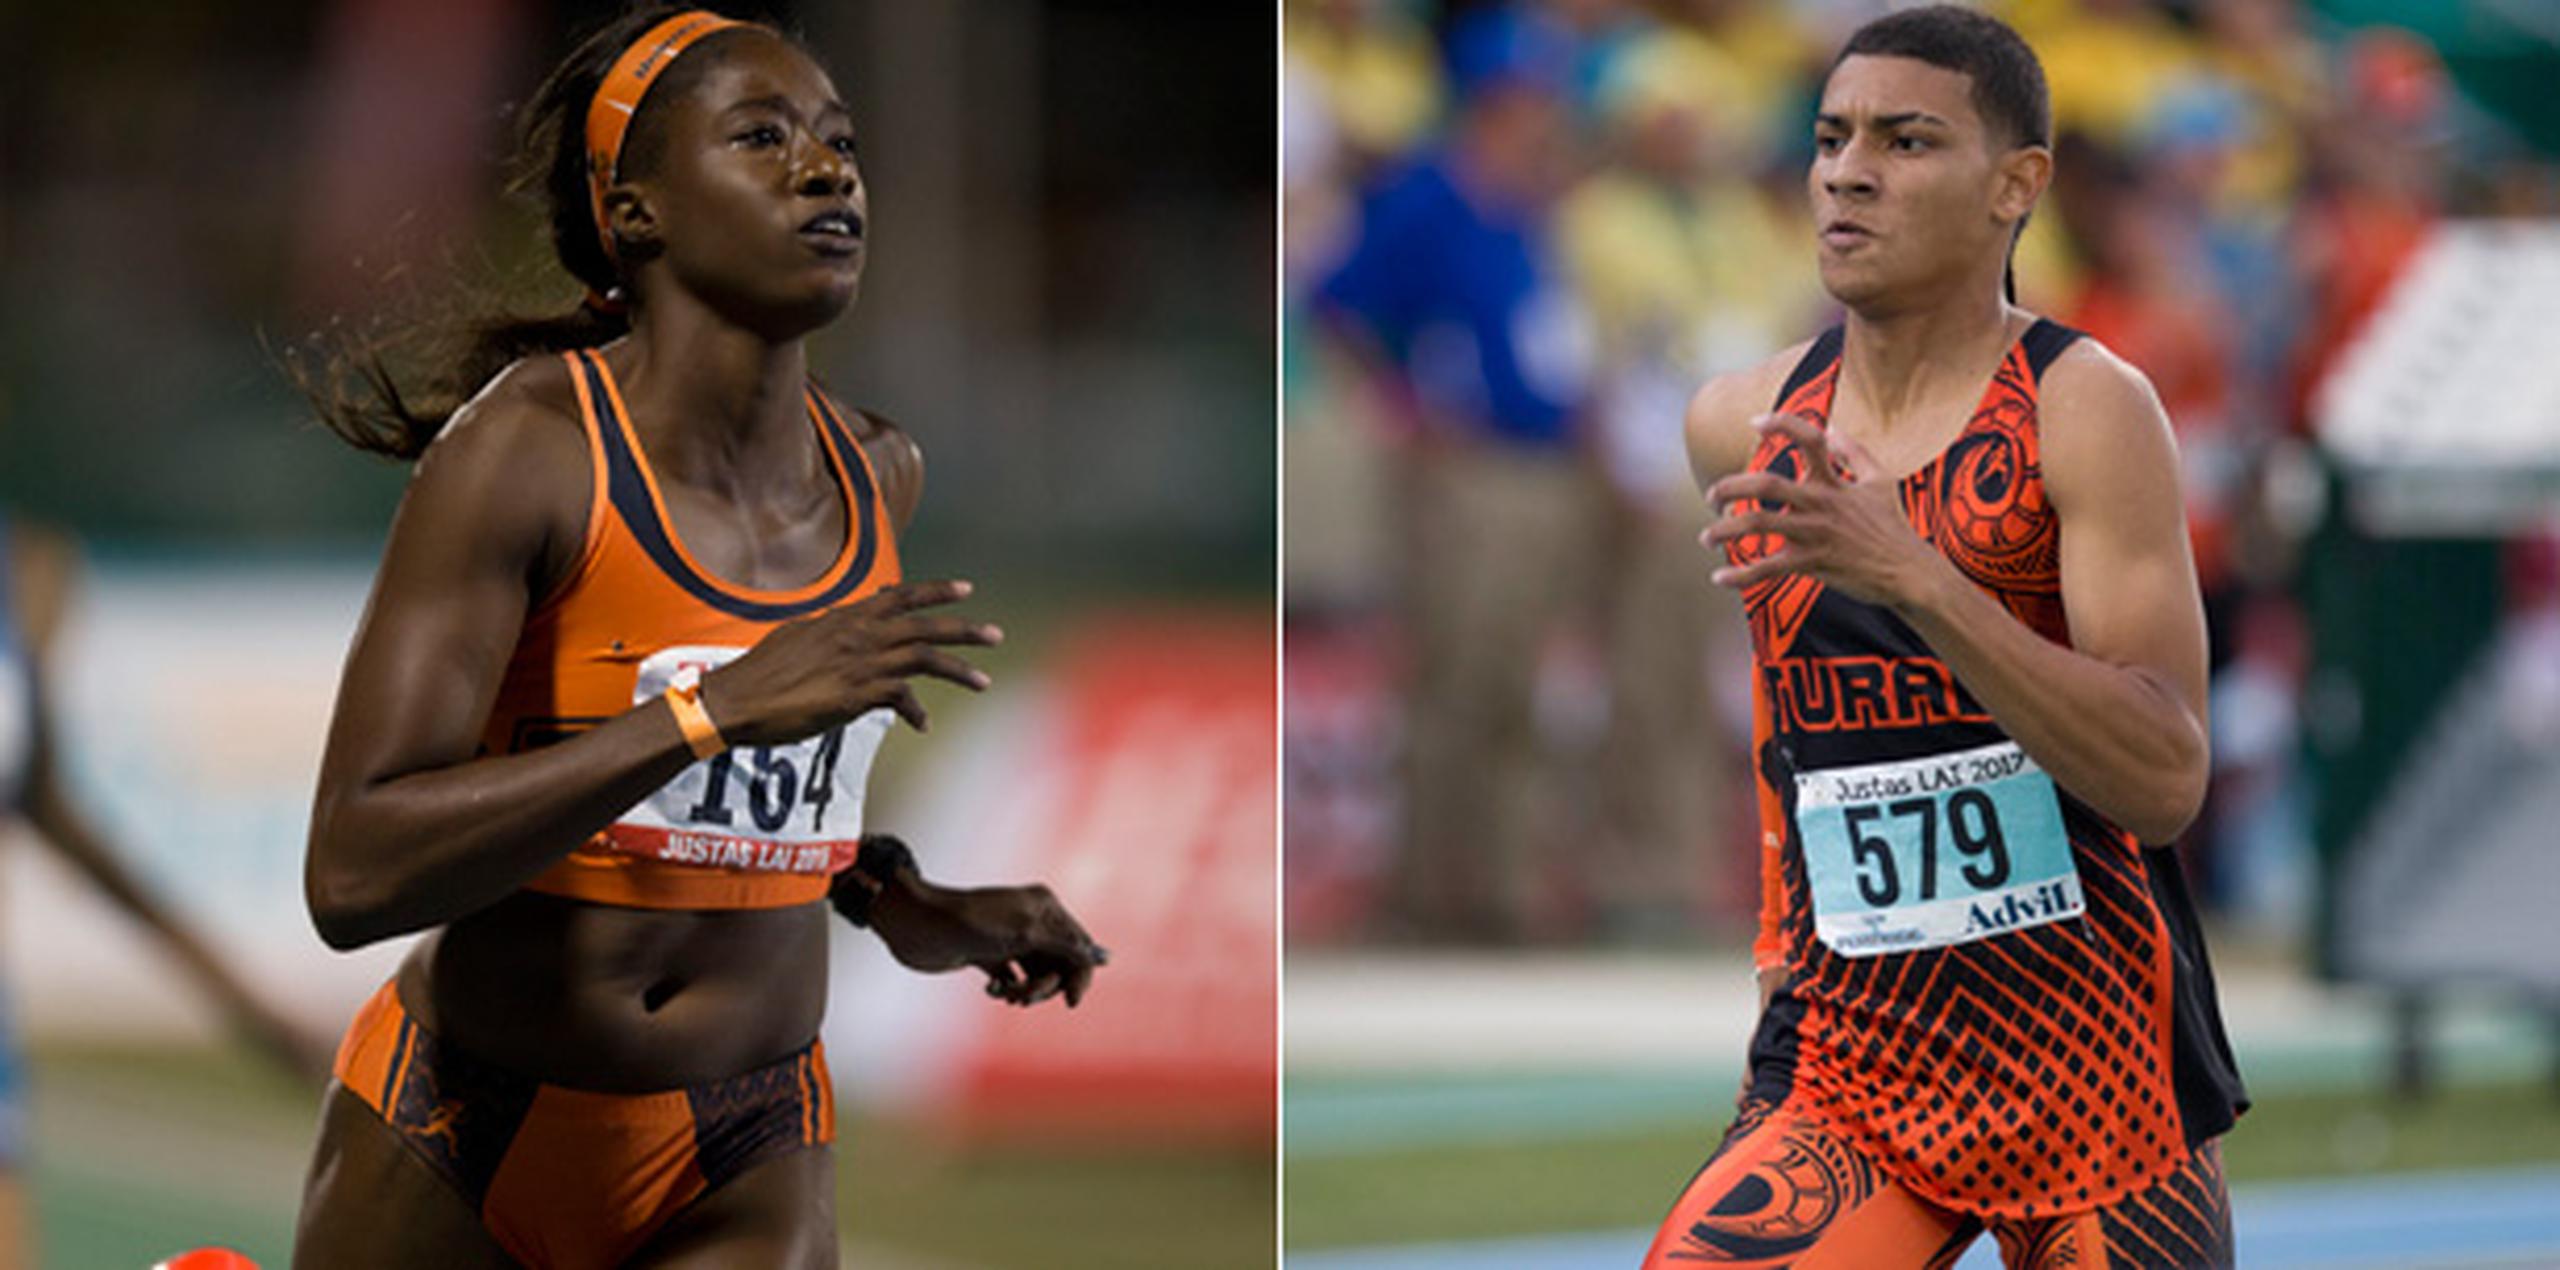 Asaine Hall, del Turabo, es favorita para disputar el oro en los 100, 200 y 400 metros. Mientras, Ryan Sánchez, también del Turabo es el favorito para ganar los 800 y 1,500.  (Archivo)